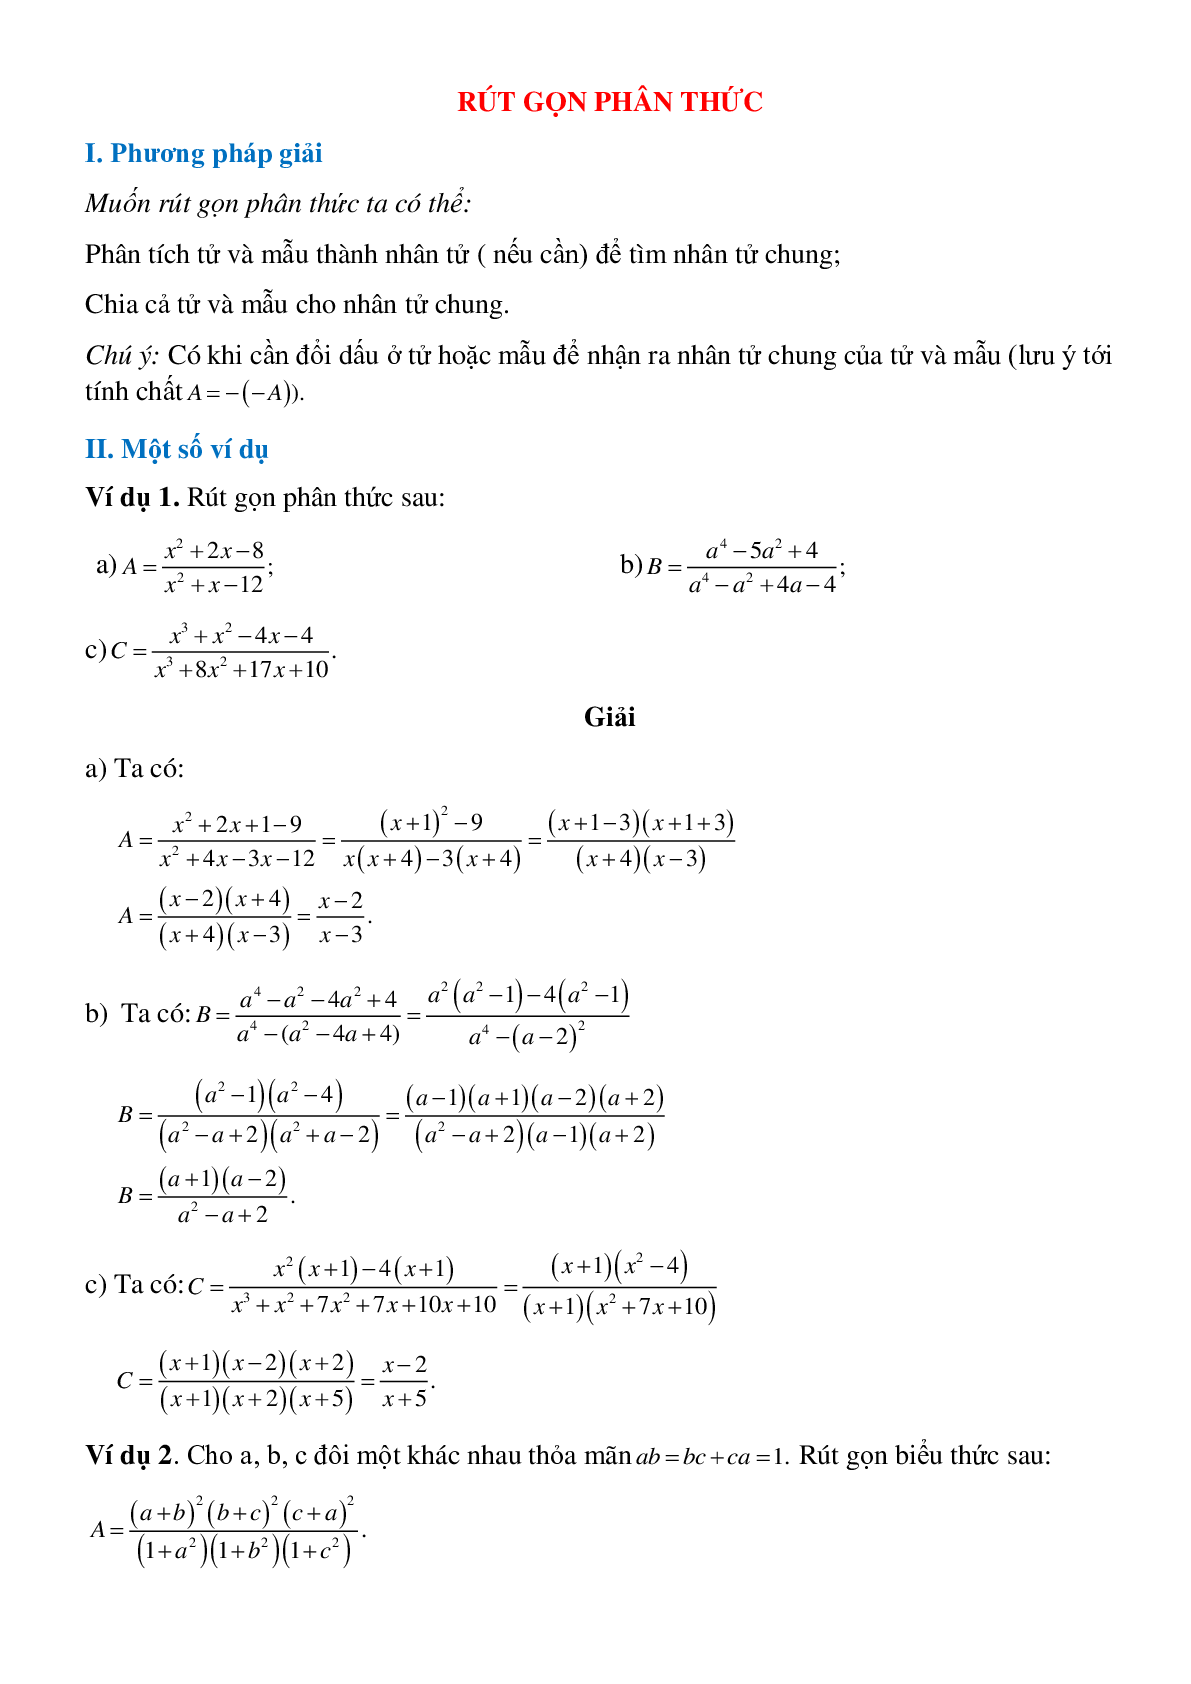 Rút gọn phân thức và phương pháp giải (trang 1)